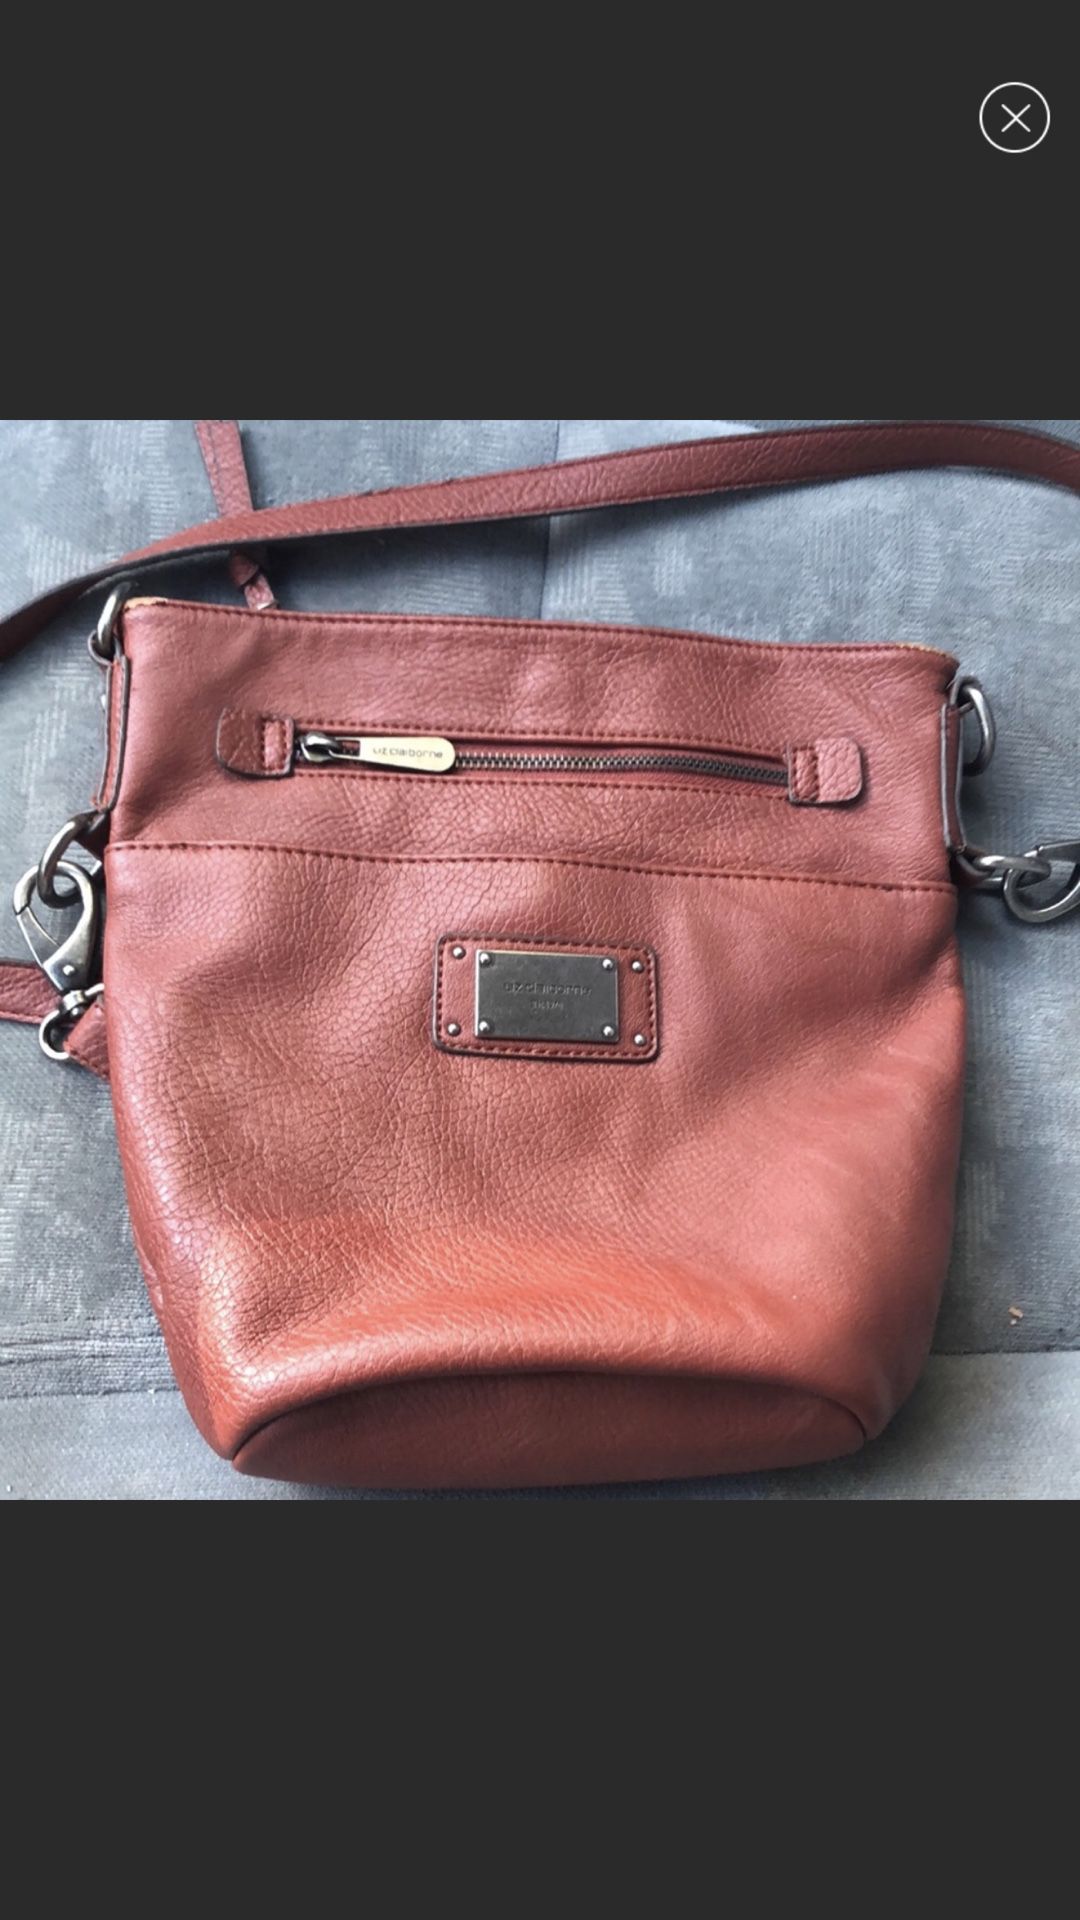 Liz clariborne brown purse with strap